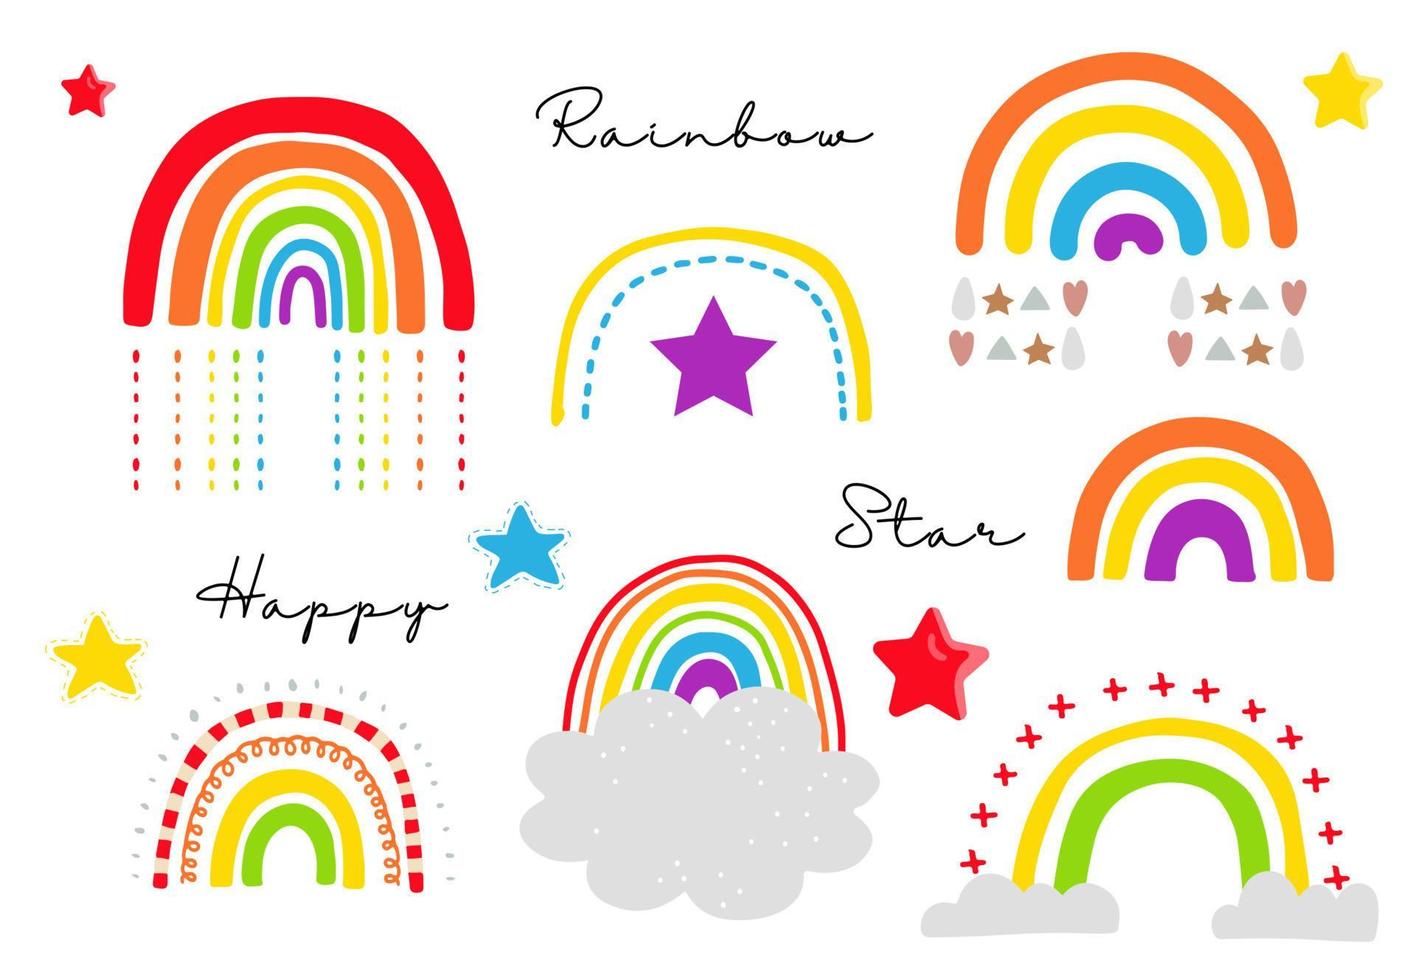 levande regnbåge uppsättning med sol, stjärna illustration för klistermärke, vykort, födelsedag invitation.editable element vektor